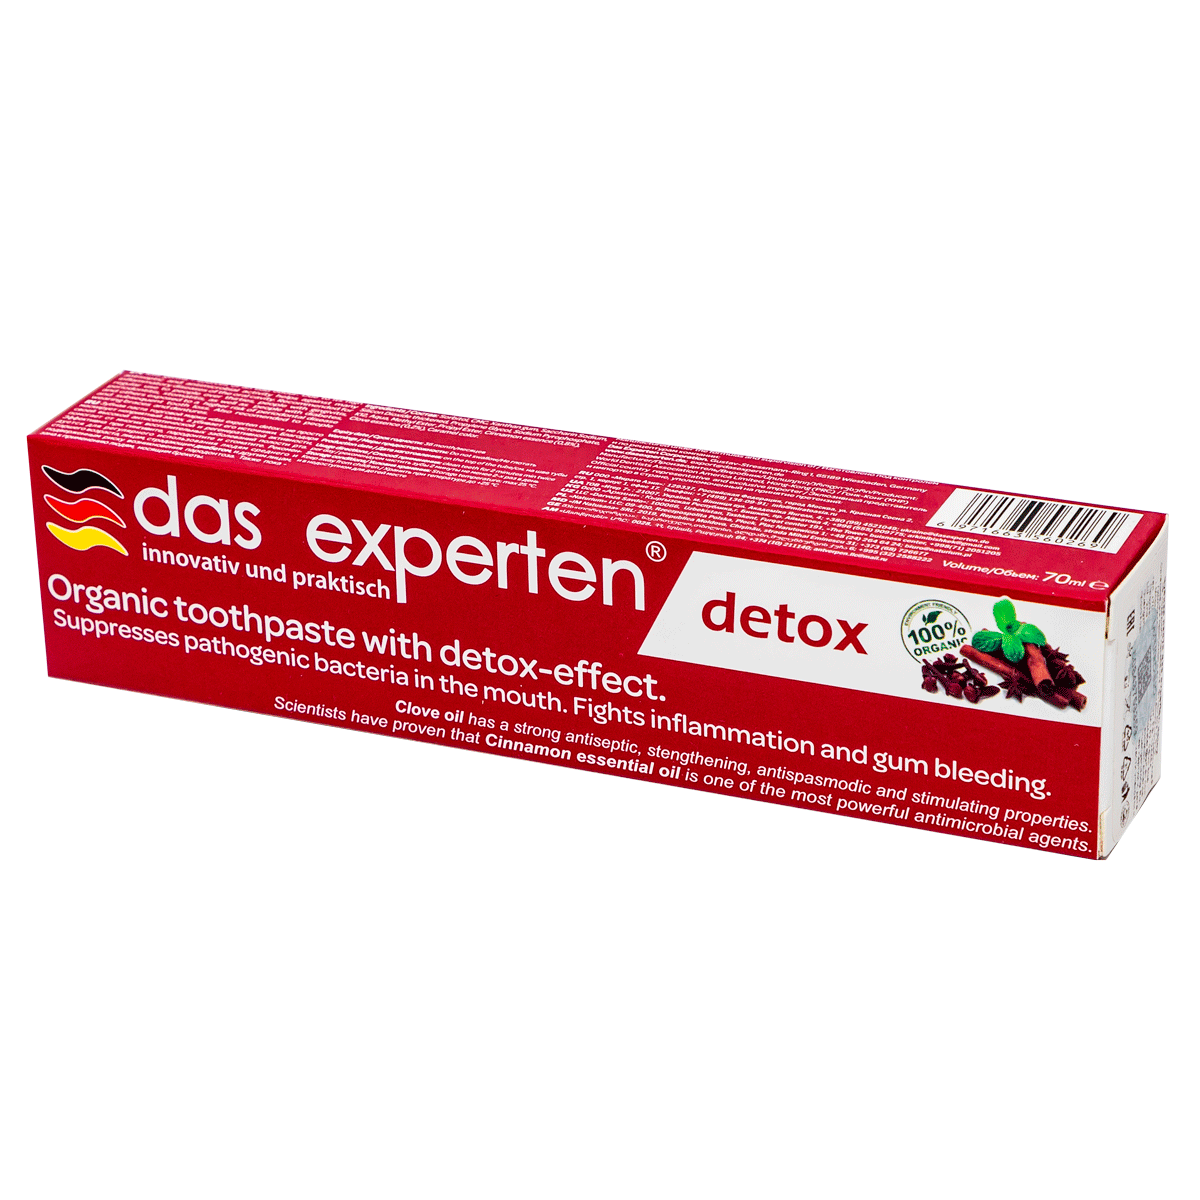 Ատամի մածուկ Das experten detox 